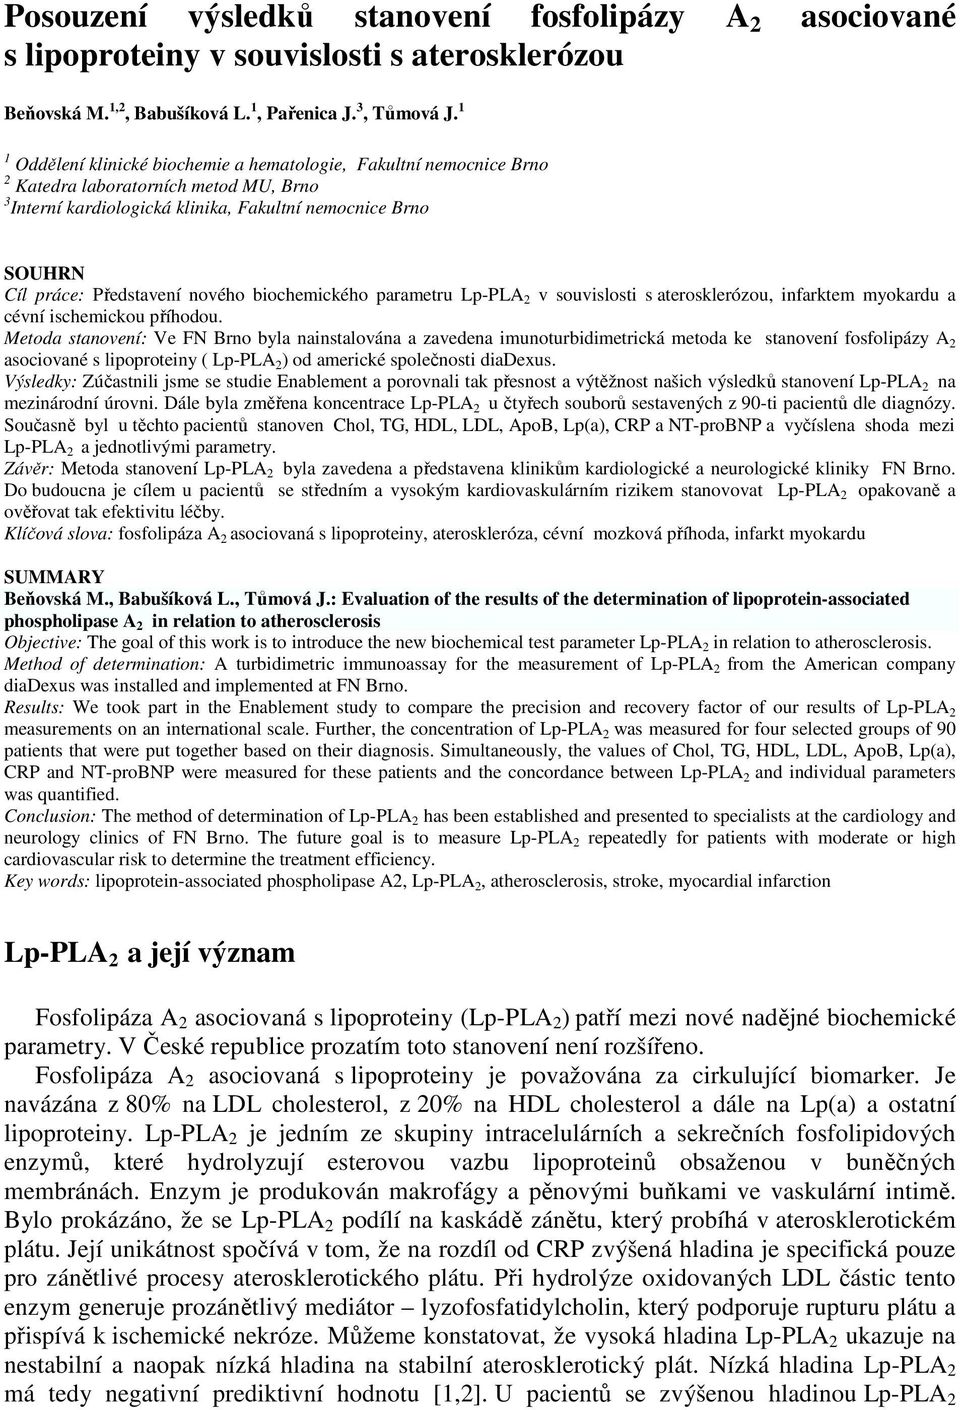 nového biochemického parametru Lp-PLA 2 v souvislosti s aterosklerózou, infarktem myokardu a cévní ischemickou příhodou.